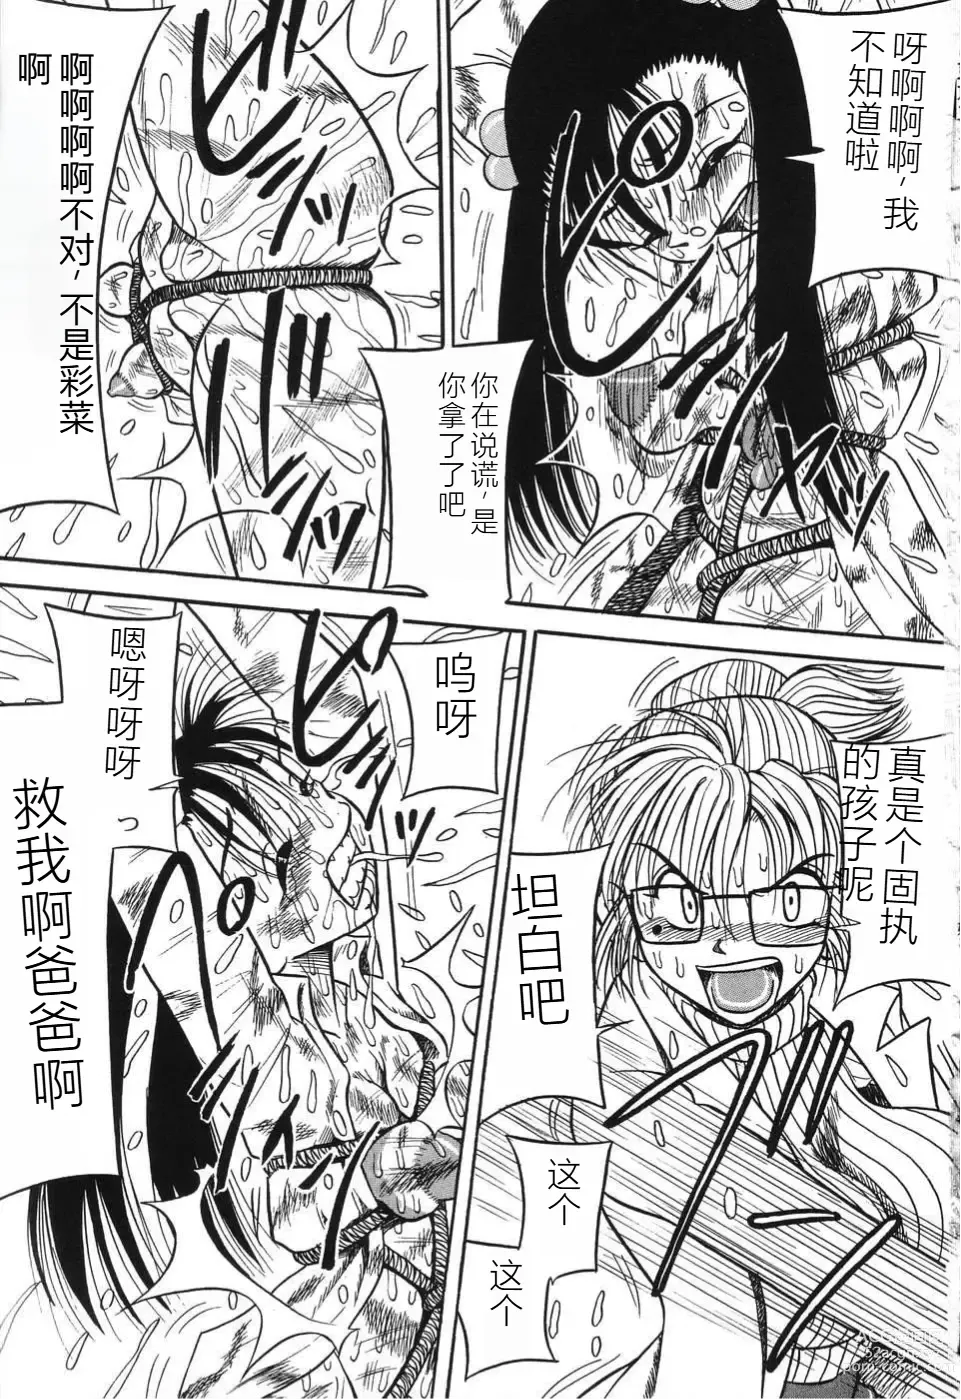 Page 5 of manga Imouto Bakunyuu Shibori